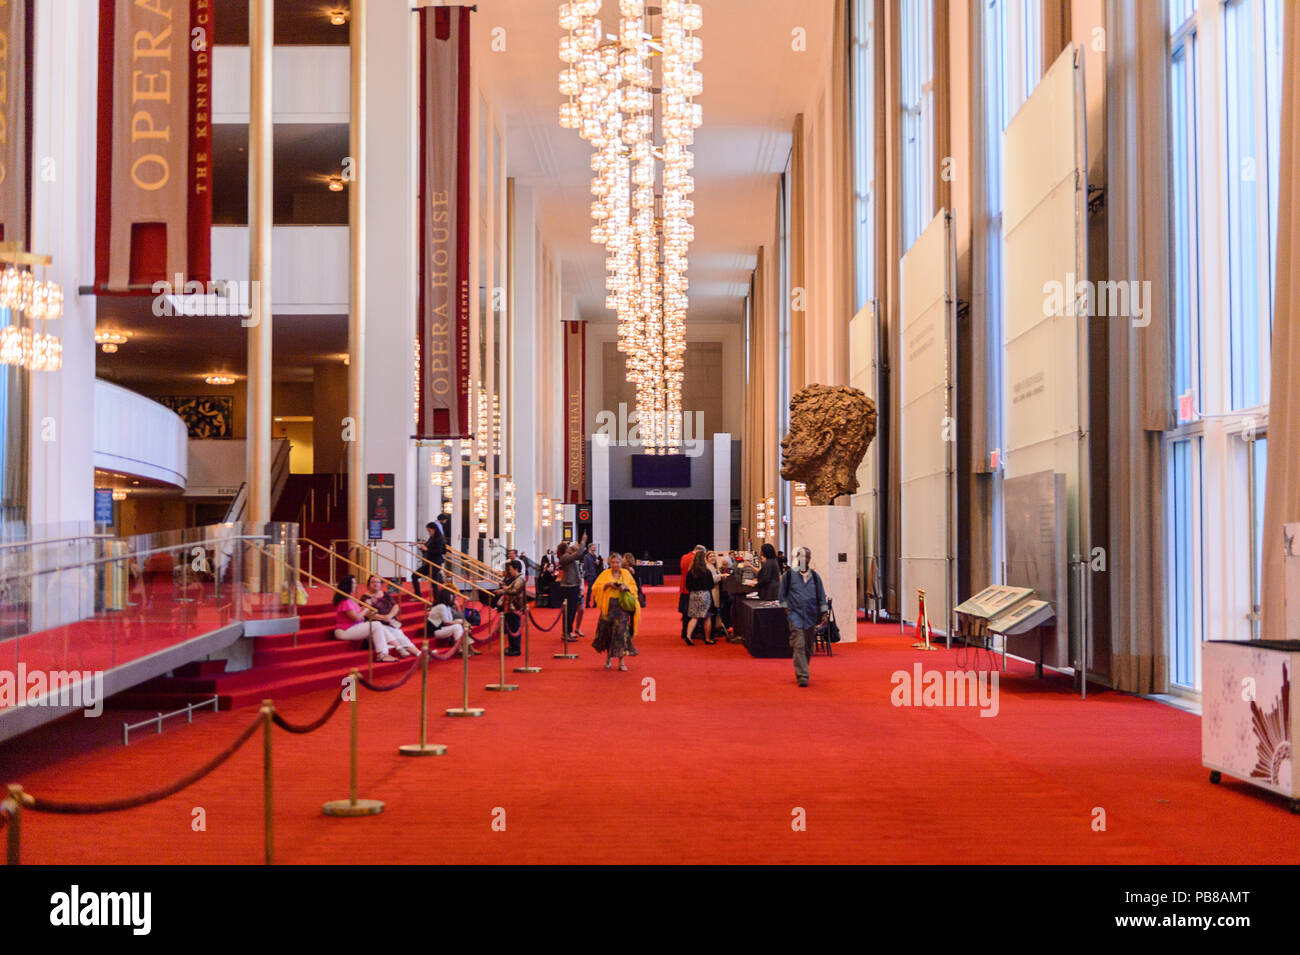 WASHINGTON, Etats-Unis - Sep 24, 2015 : Intérieur du John F. Kennedy Center for the Performing Arts Le Centre produit et présente du théâtre, de la danse, de balle Banque D'Images